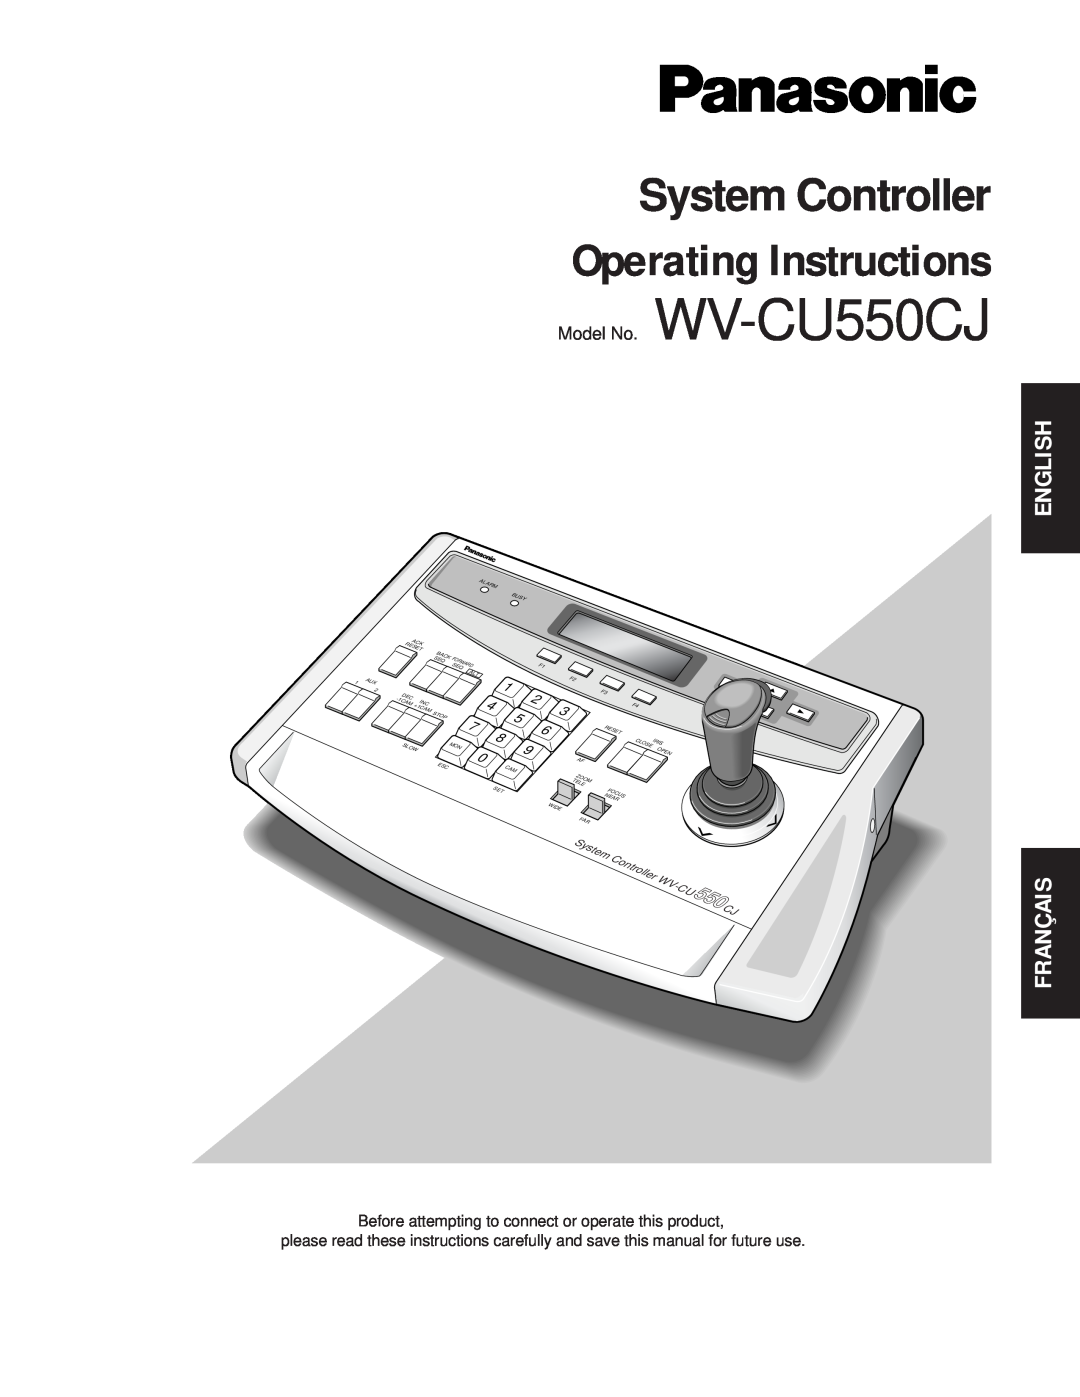 Panasonic manual English, Operating Instructions, System Controller, Model No. WV-CU550CJ, Français 